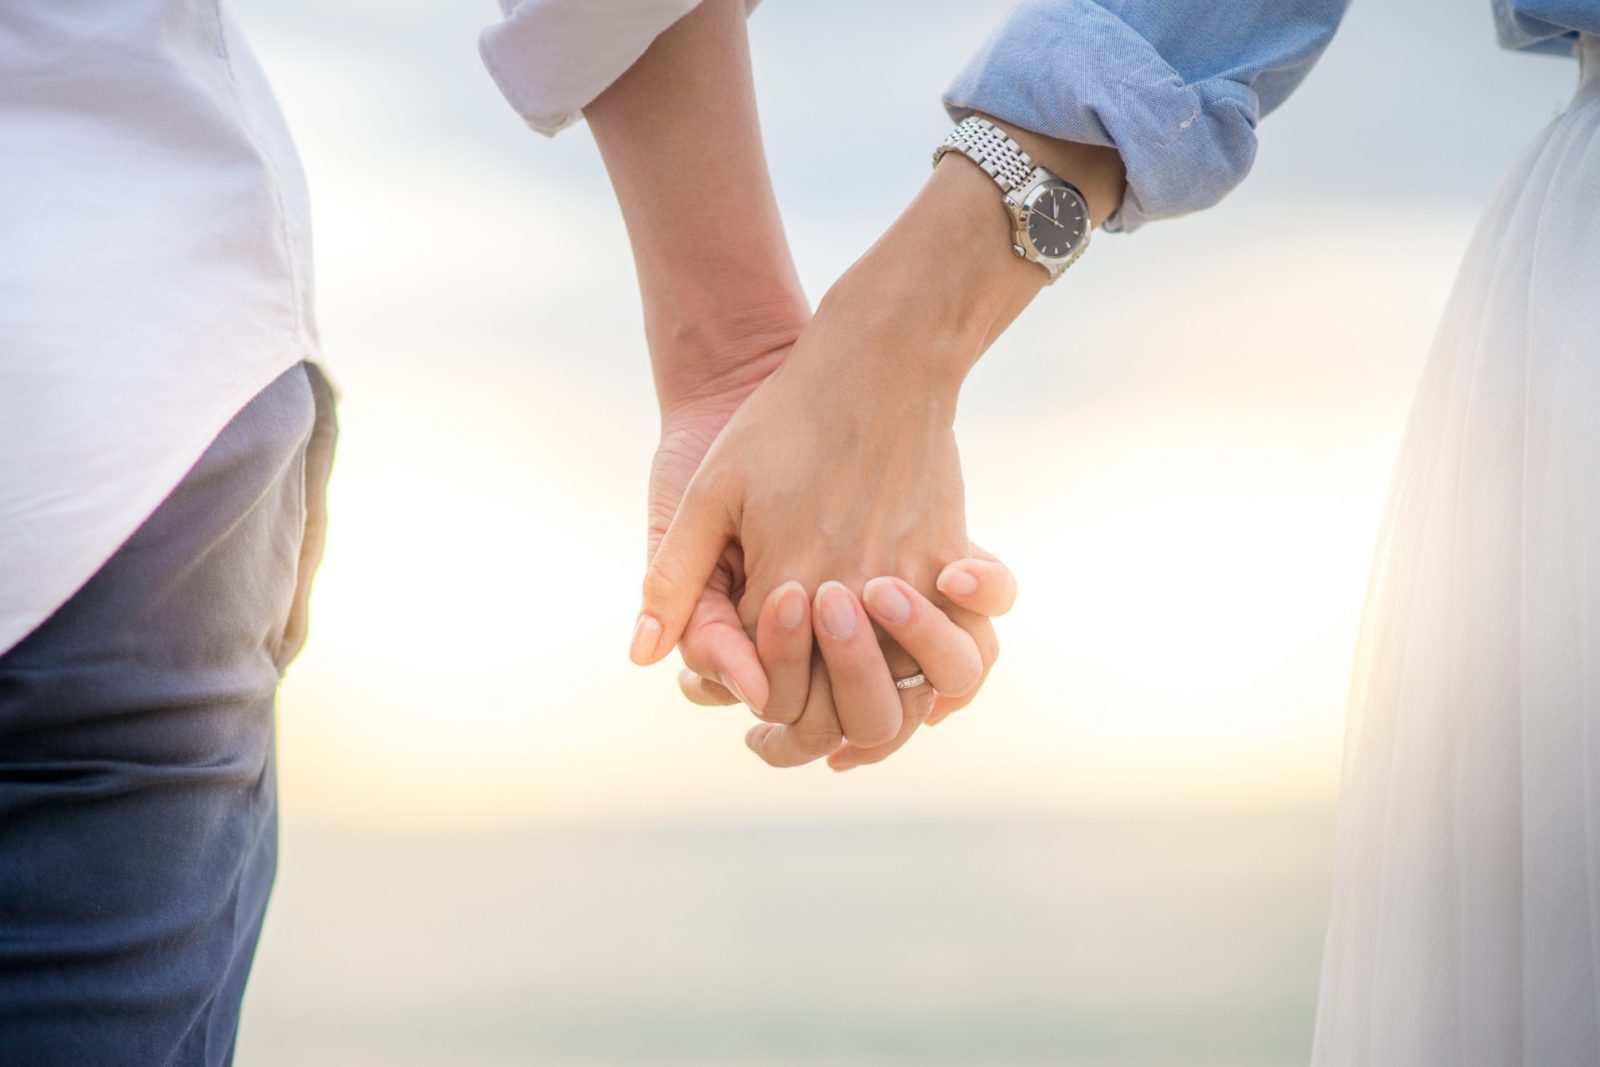 Брак XXI: кажется, жениться сегодня хотят всё меньше людей